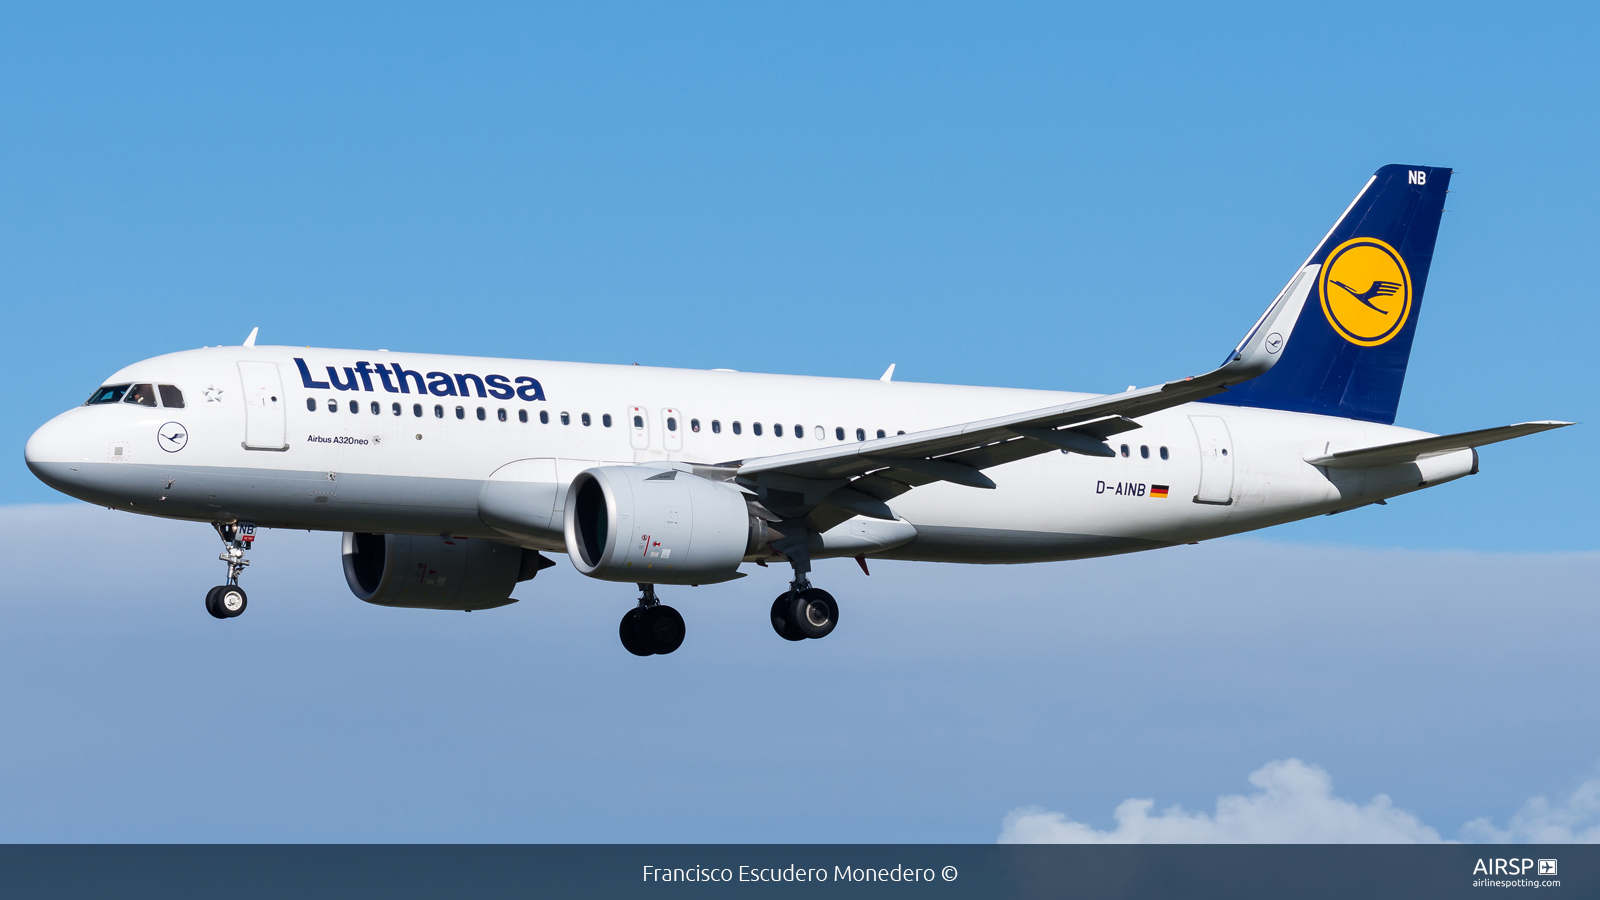 Lufthansa  Airbus A320neo  D-AINB